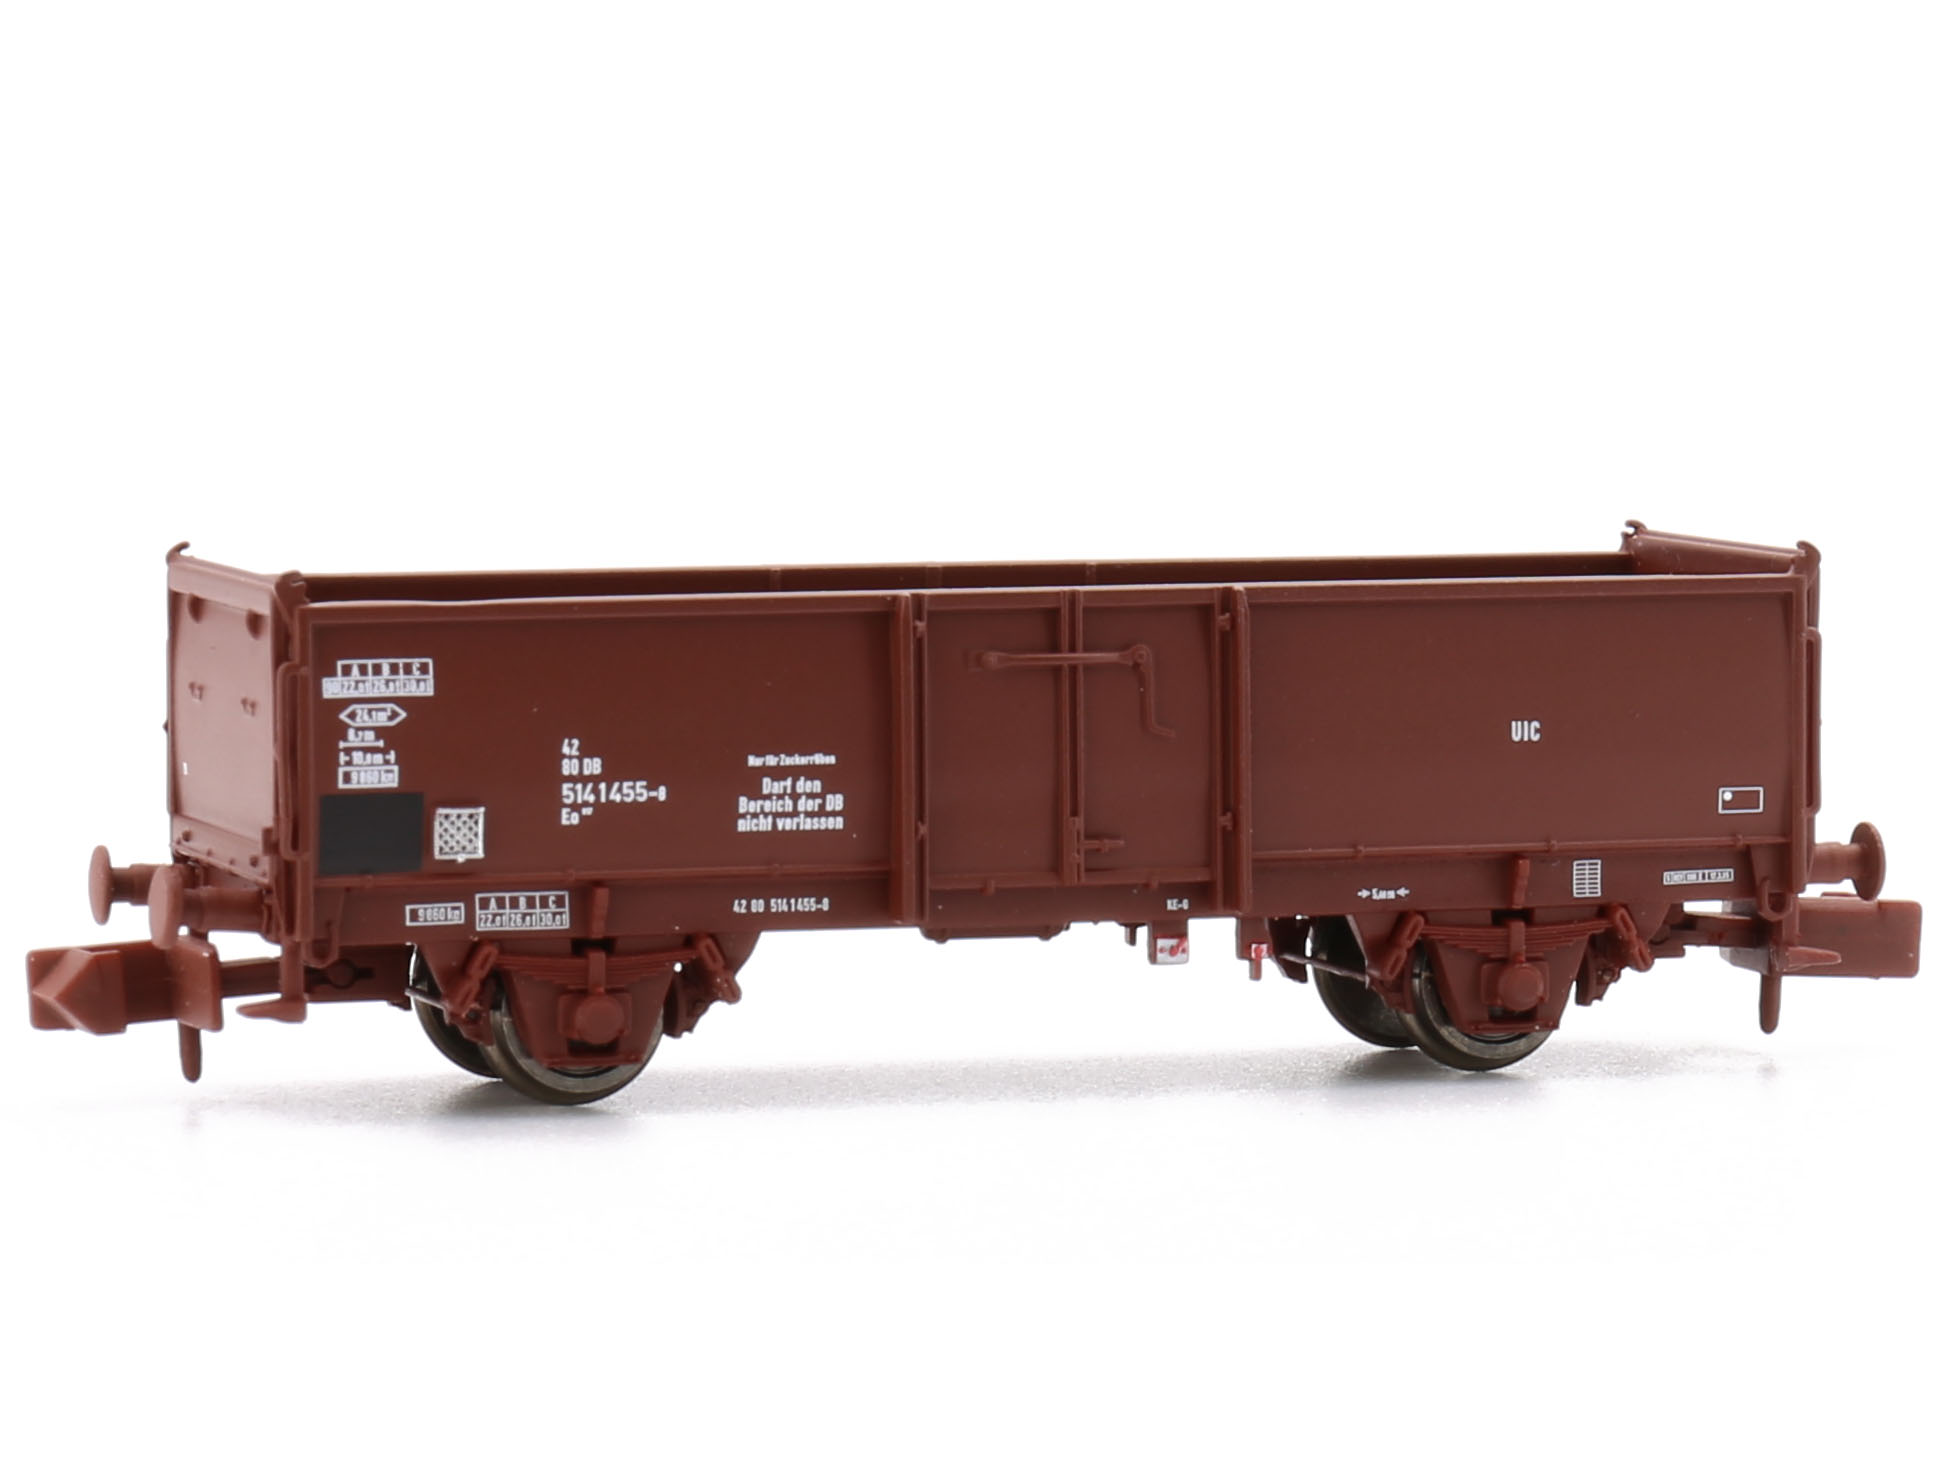 N Scale - Modellbahn Union - MU_N-G52014 - Omm open beet wagon - Deutsche Bundesbahn - 5141 455-8